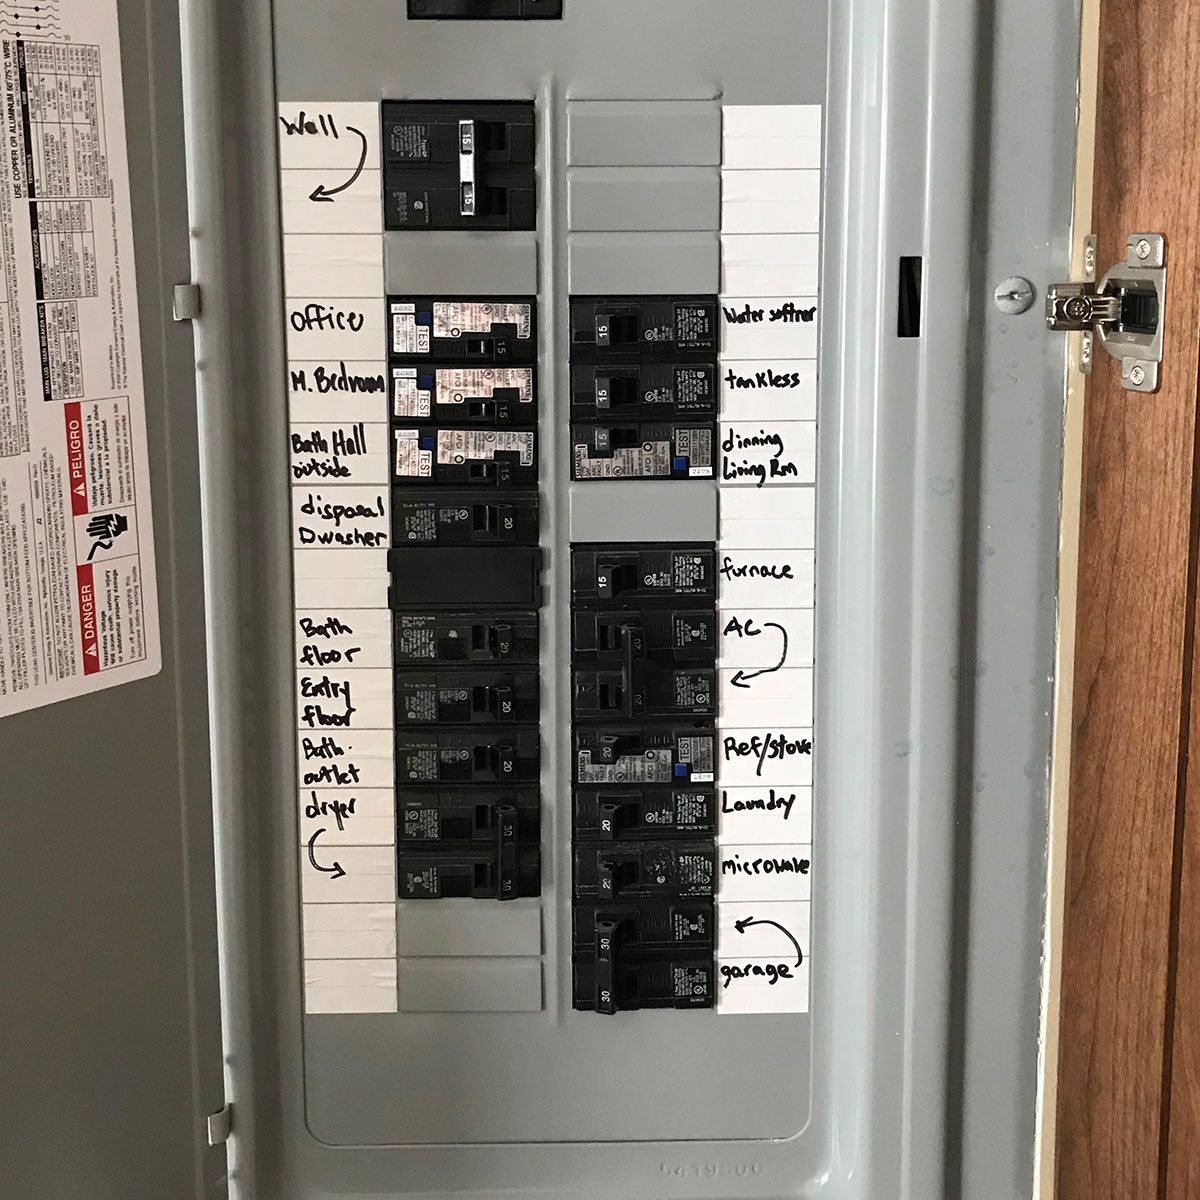 circuit breaker panel labels